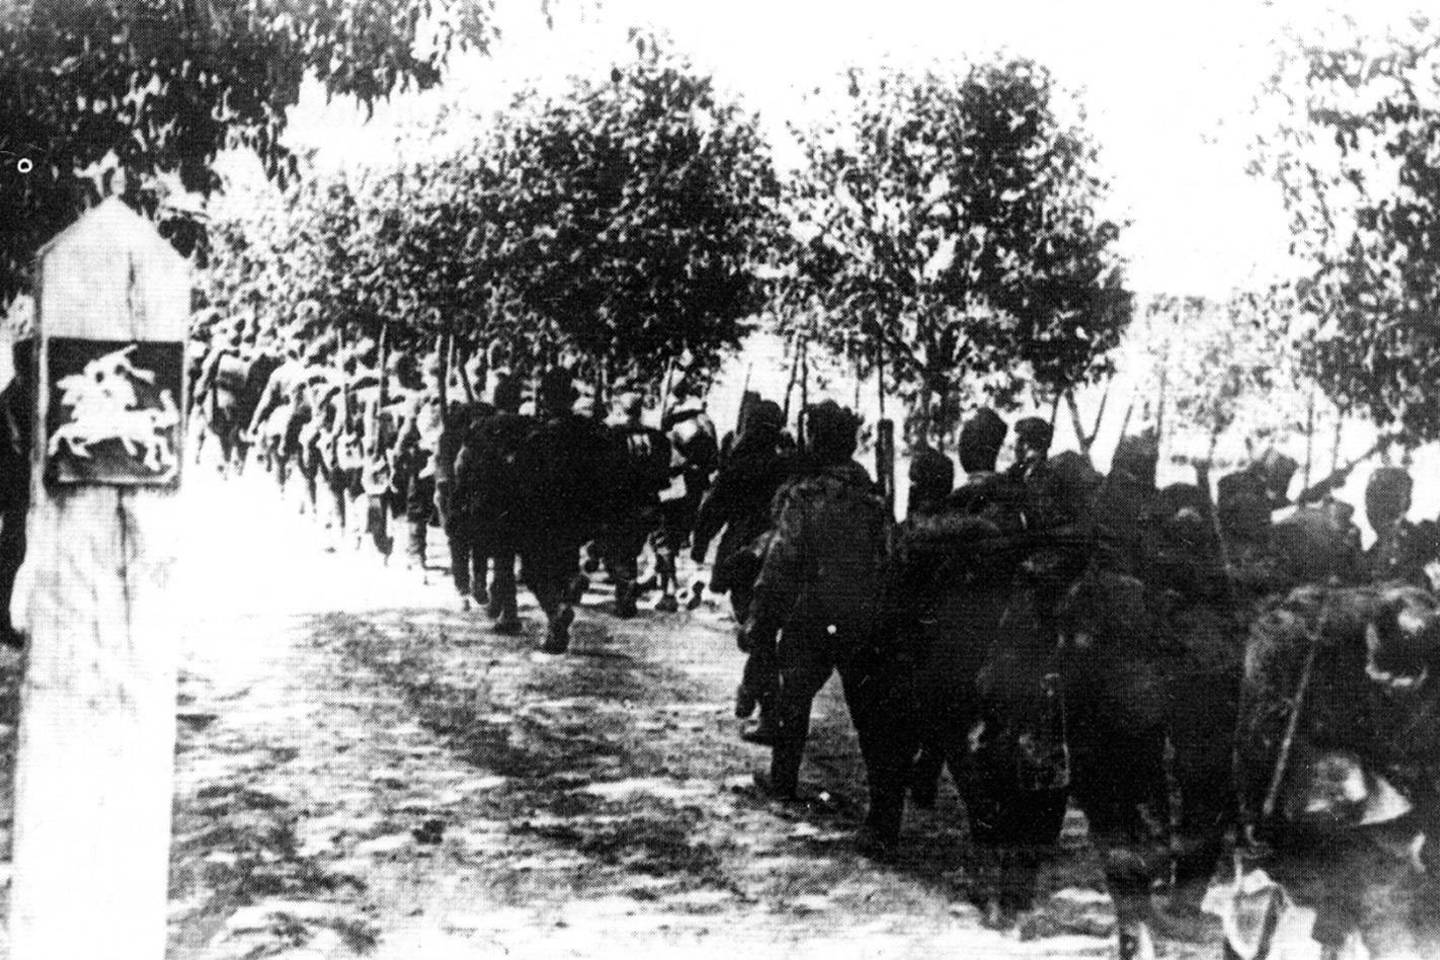 Raudonoji armija peržengia Lietuvos valstybinę sieną. 1940 m. birželio 15 d.